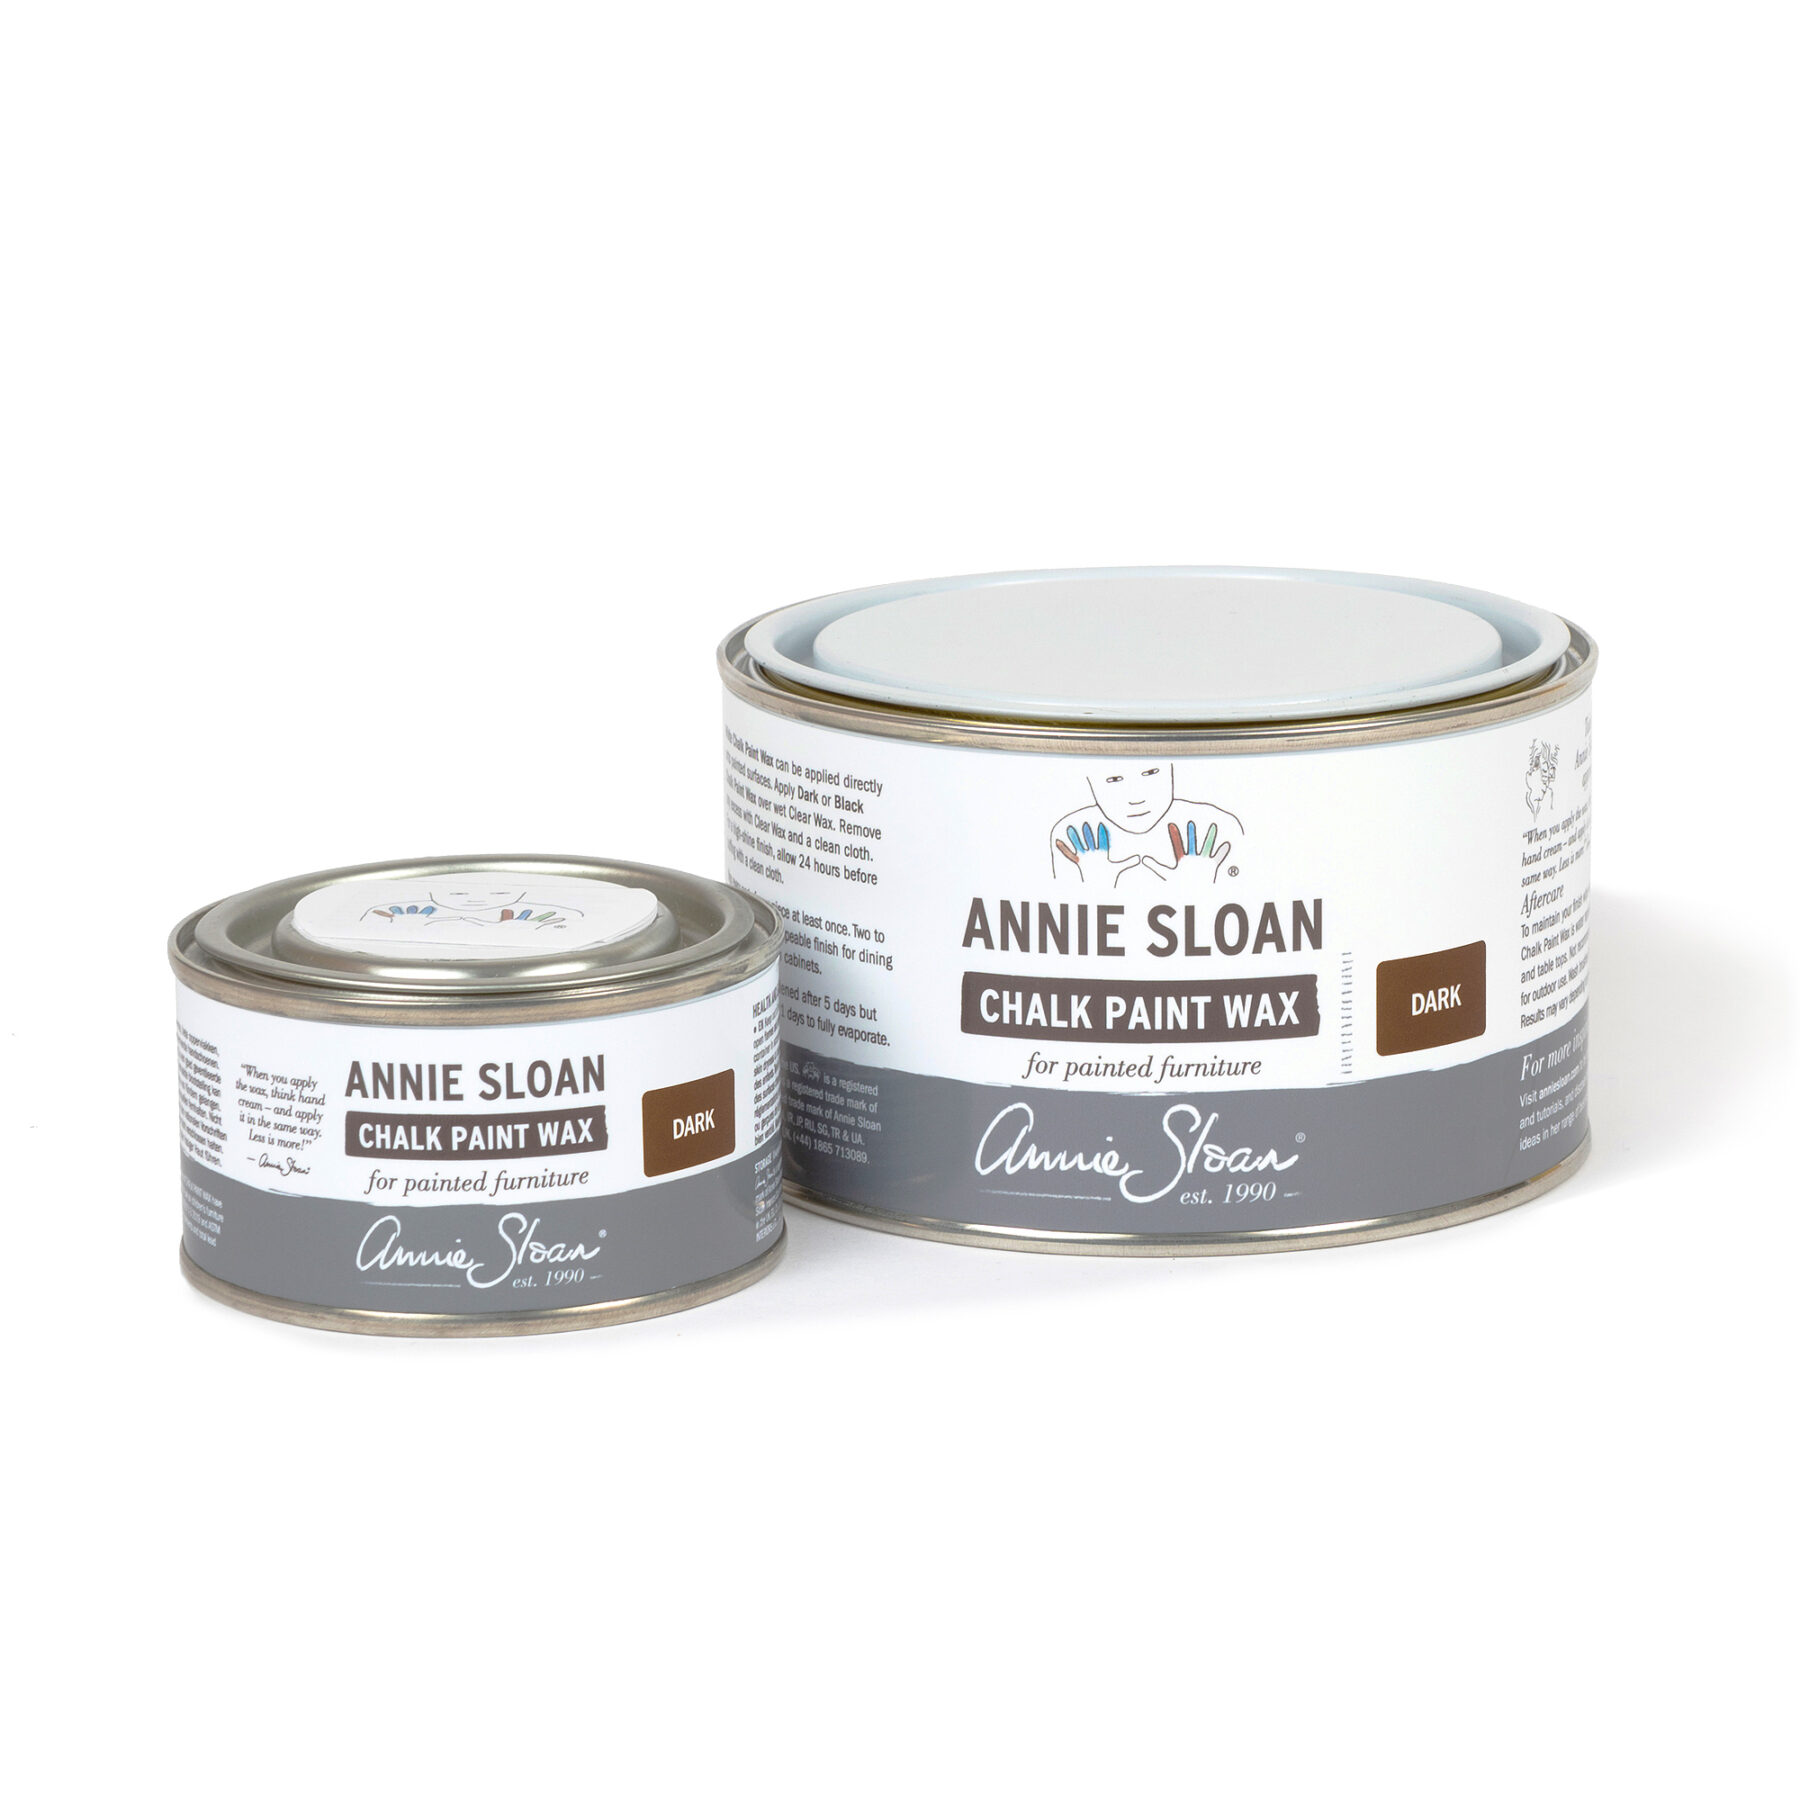 Wachs Dunkel (Dark Wax) - Annie Sloan 120 ml von Annie Sloan